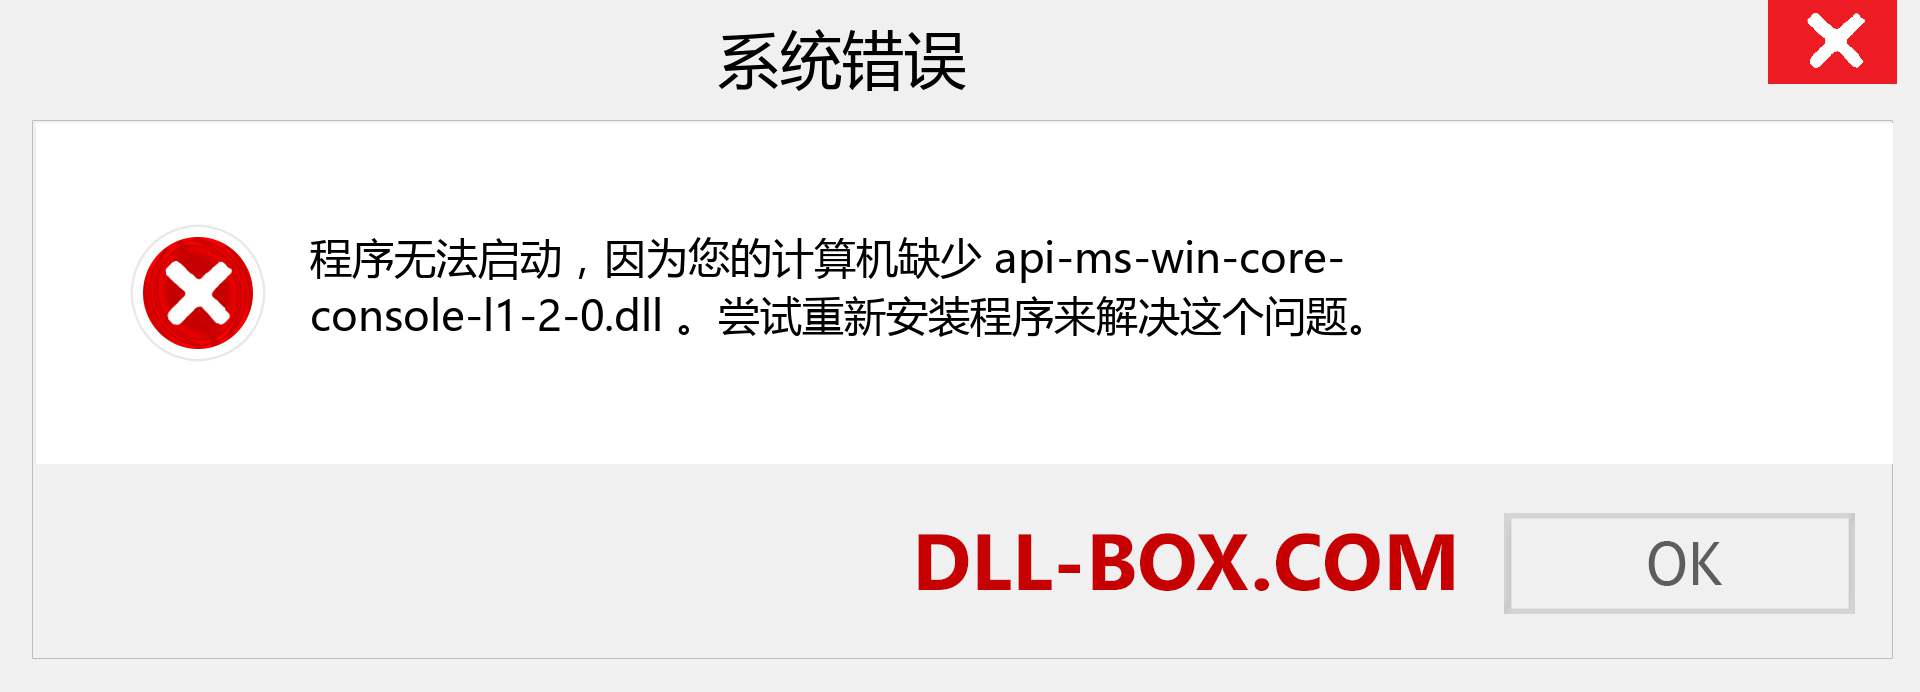 api-ms-win-core-console-l1-2-0.dll 文件丢失？。 适用于 Windows 7、8、10 的下载 - 修复 Windows、照片、图像上的 api-ms-win-core-console-l1-2-0 dll 丢失错误